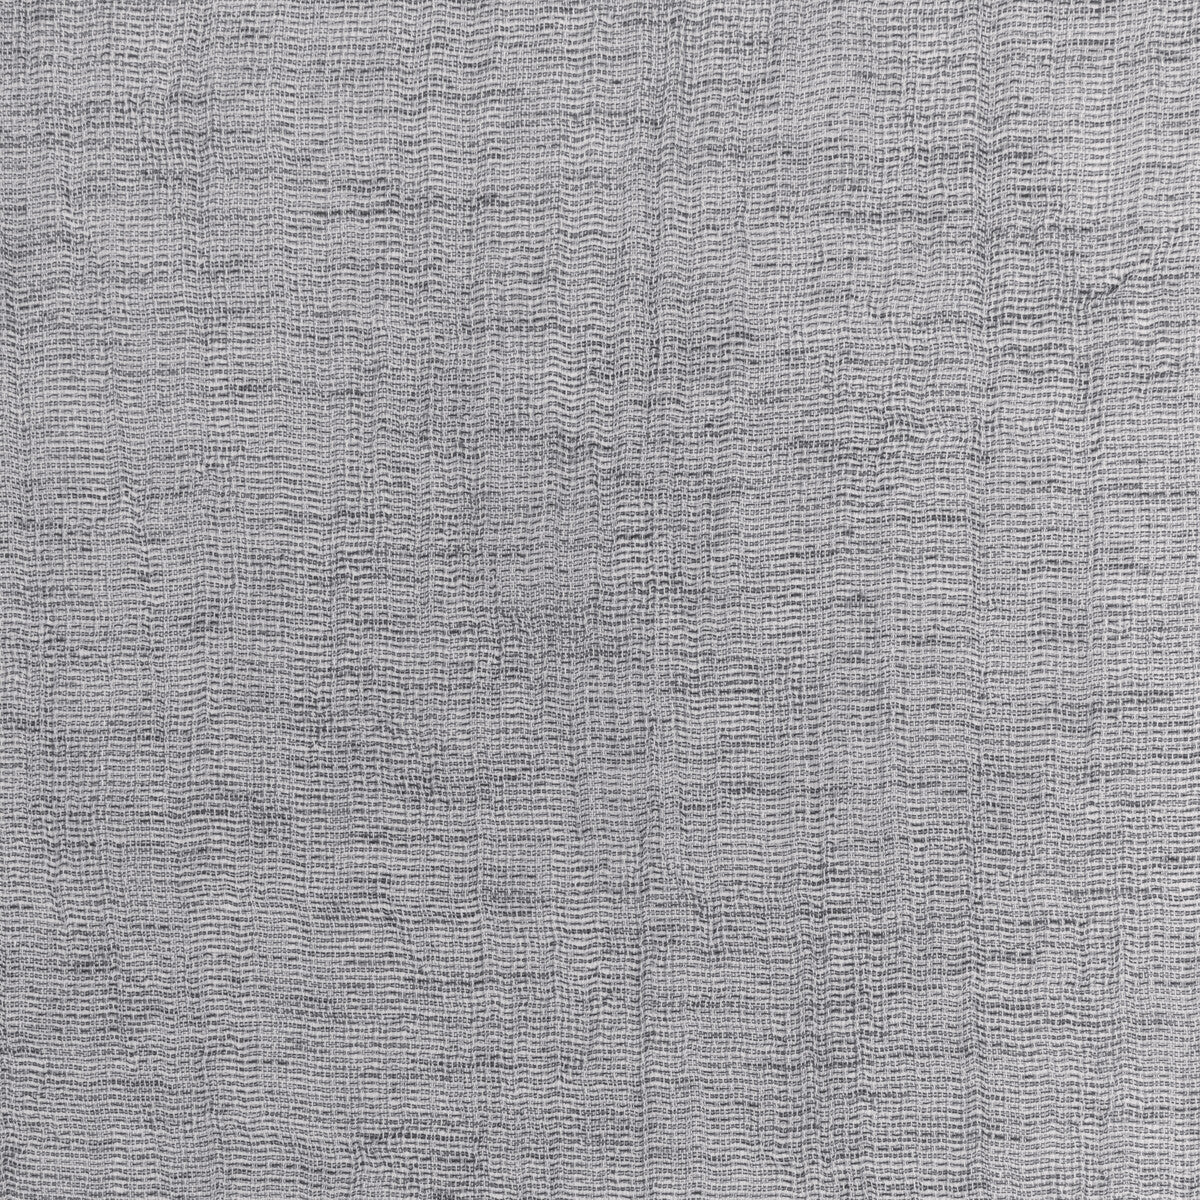 Kravet Basics fabric in 4881-1121 color - pattern 4881.1121.0 - by Kravet Basics